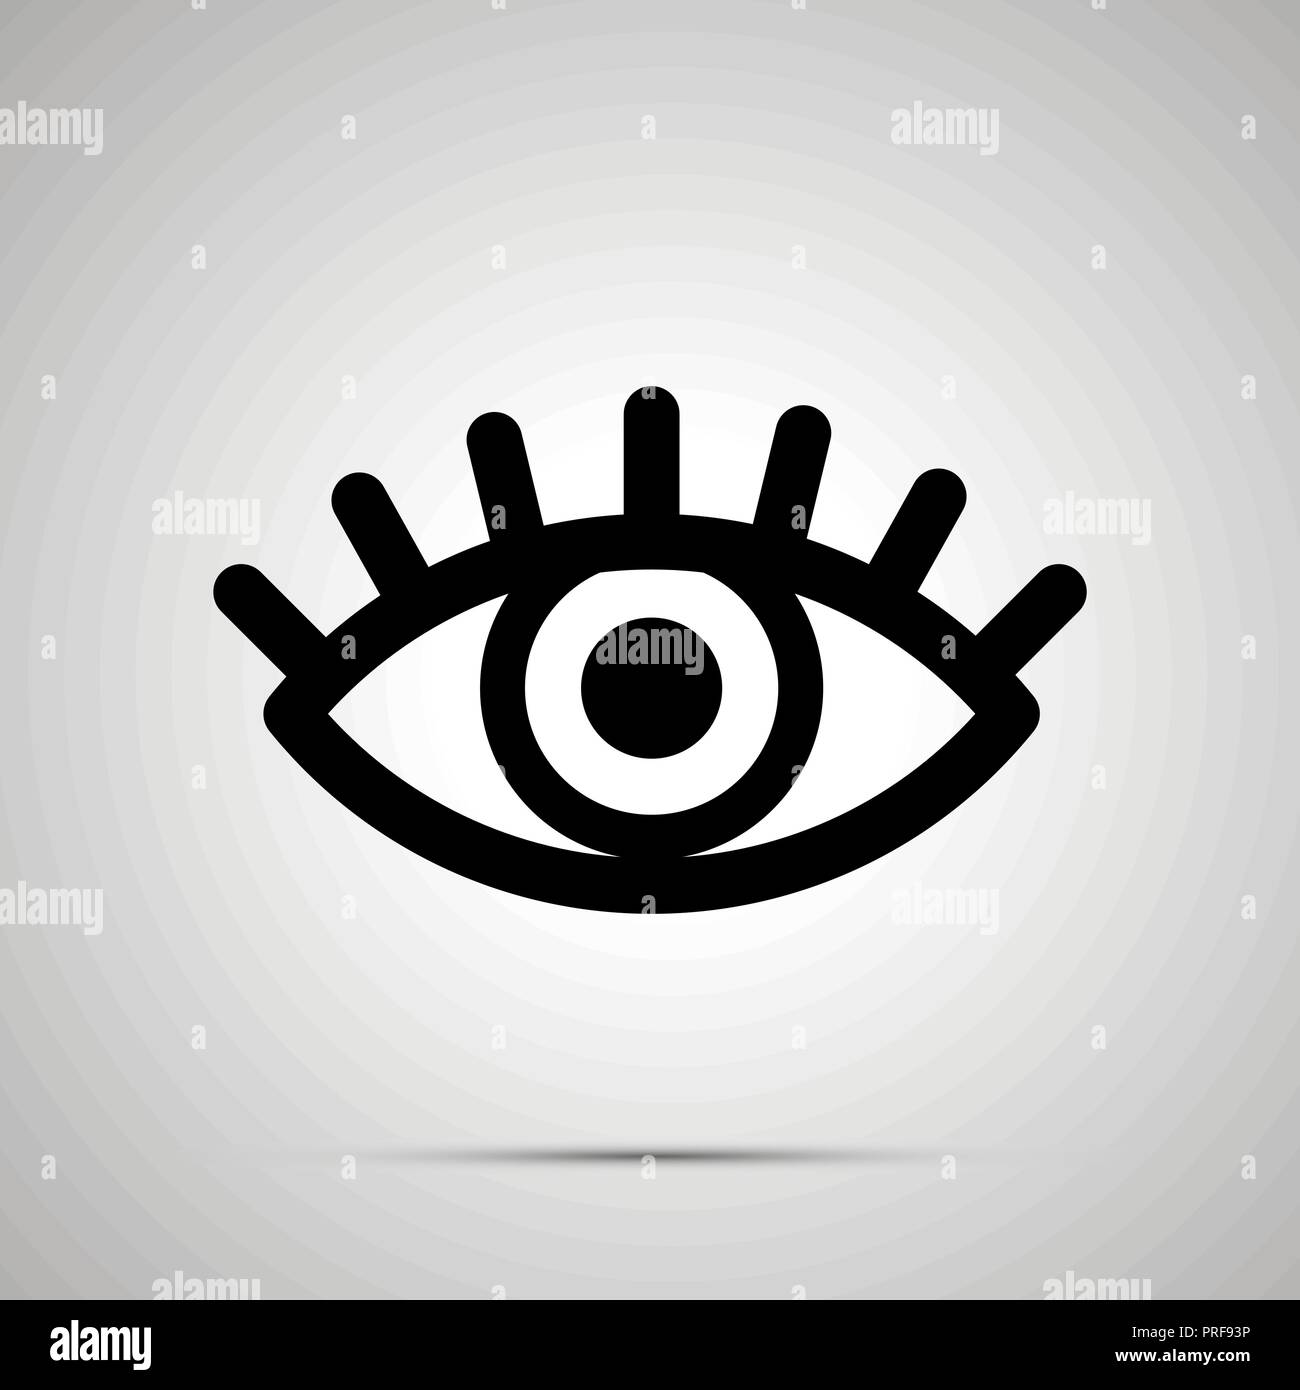 Auge mit Schüler- und Wimpern Zeichen öffnen, einfache schwarze Symbol mit  Schatten Stock-Vektorgrafik - Alamy